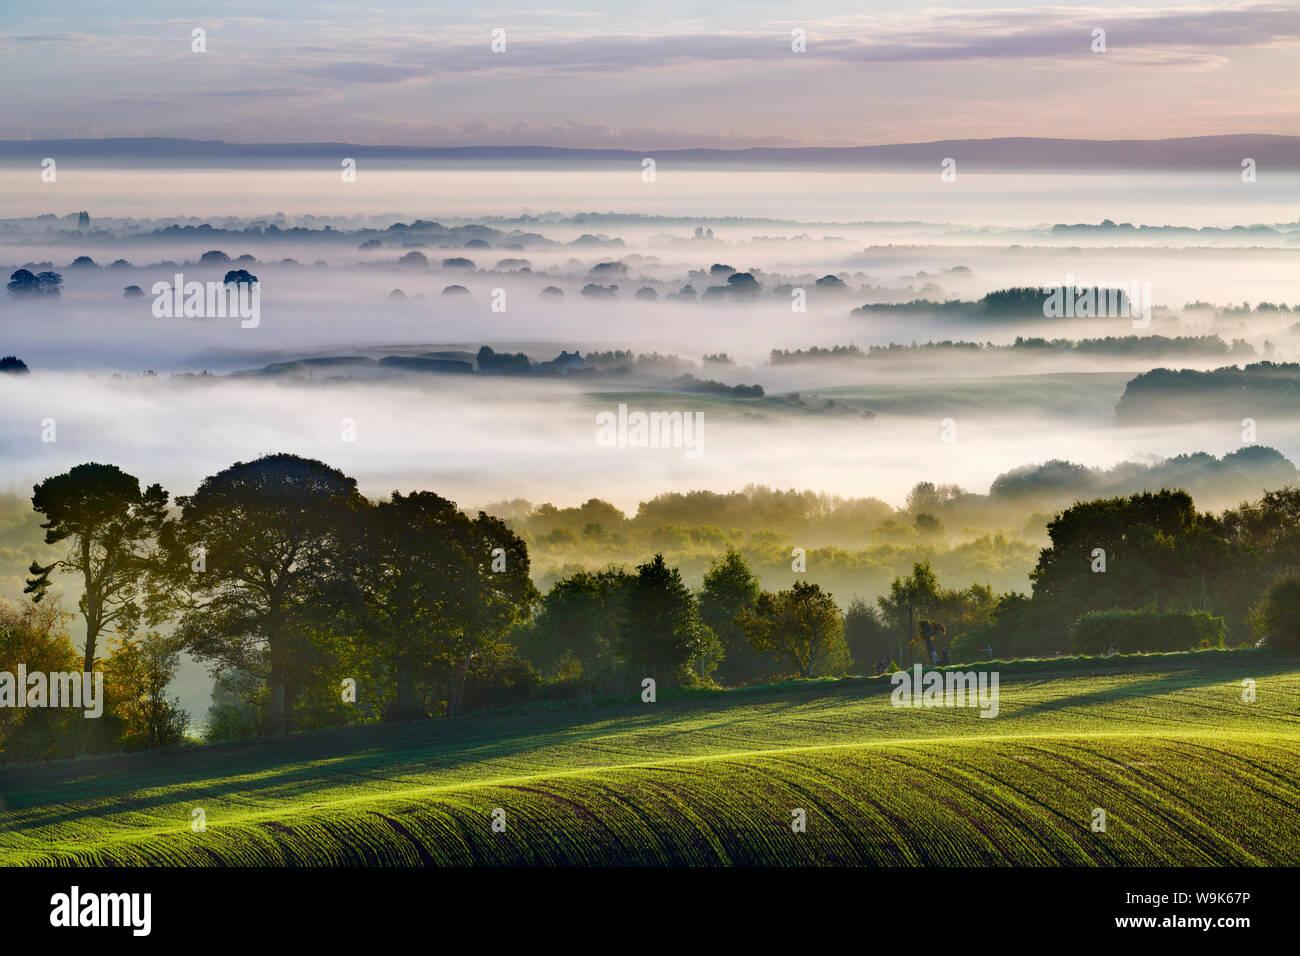 Felder reichen von Eddisbury Hill auf der Dämmerung Landschaft mit Herbst Nebel liegen auf dem Cheshire Plain, Cheshire, England, Vereinigtes Königreich Stockfoto